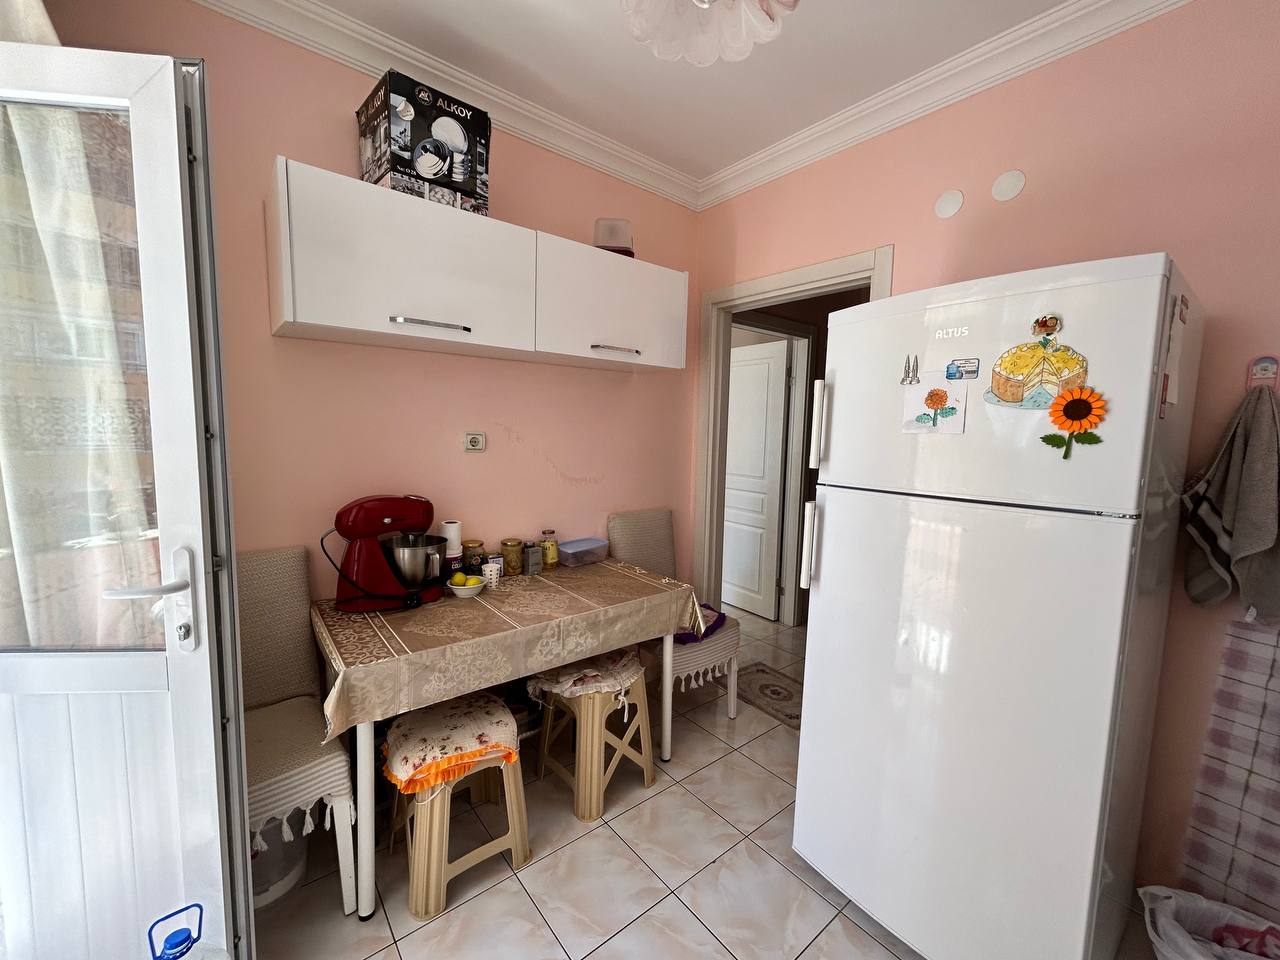 Квартира планировкой 2+1  с отдельной кухней в районе Махмутлар  - Фото 8